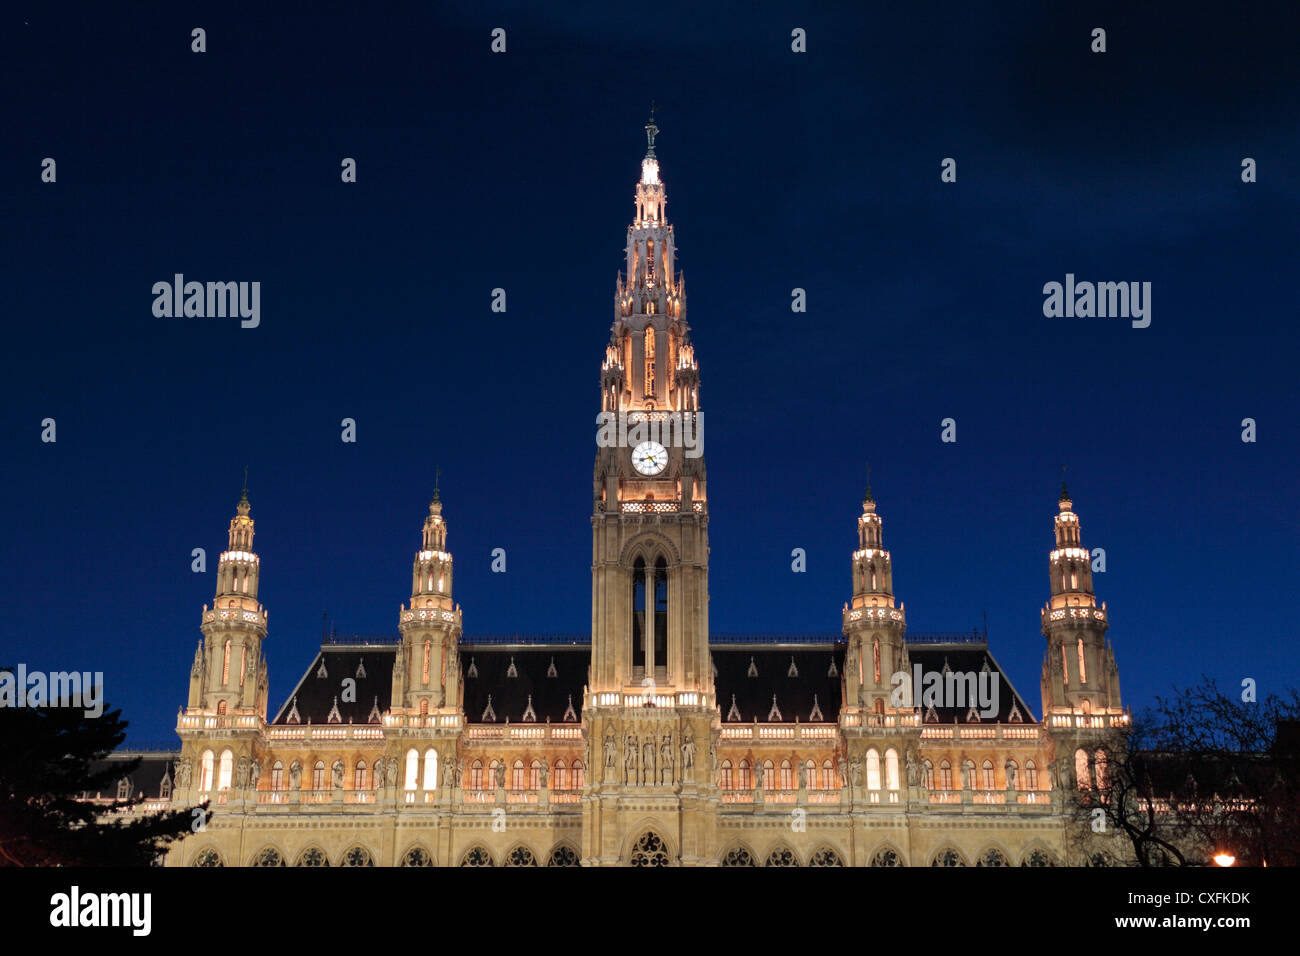 The Neues Rathaus (City Hall), designed by Friedrich von Schmidt, Vienna, Austria. Stock Photo